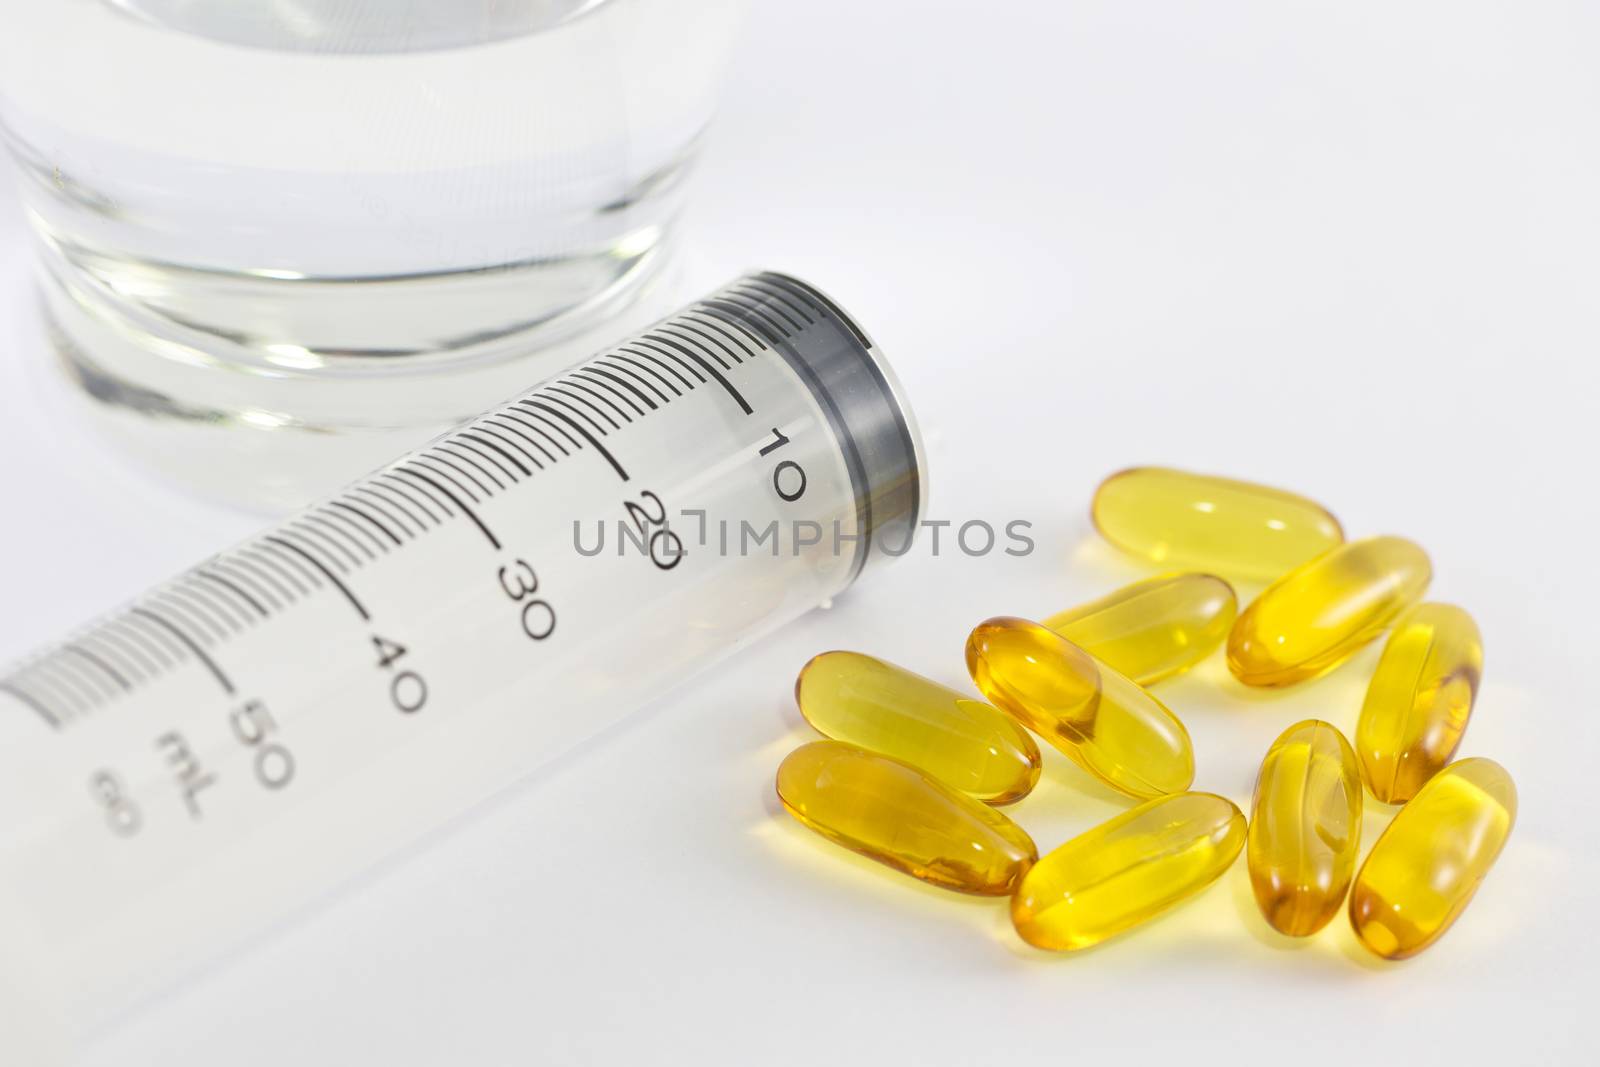 Vitamin capsules and syringe isolated white background.